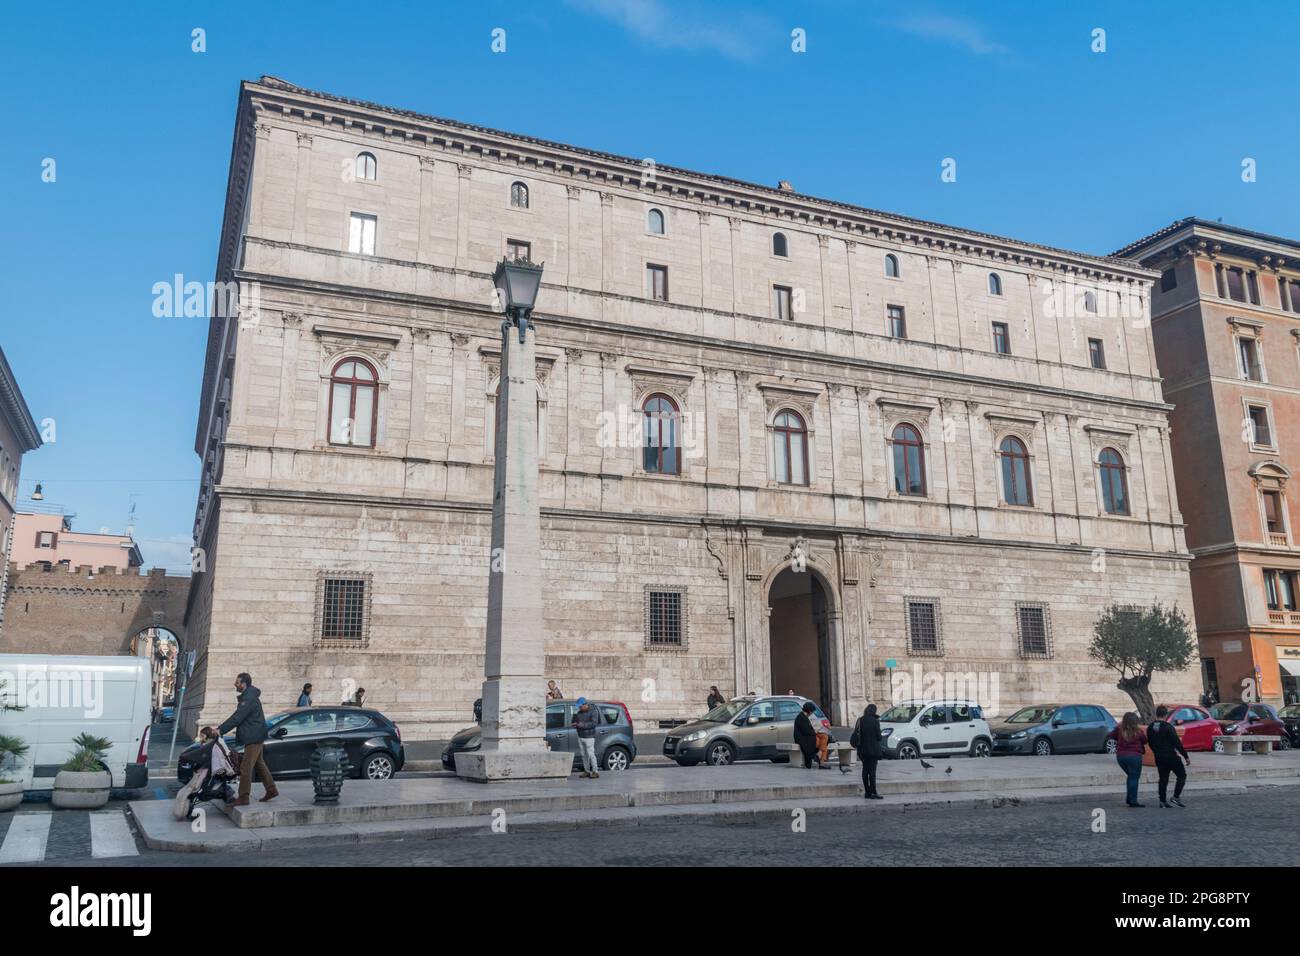 Rome, Italie - 7 décembre 2022 : Palazzo Torlonia, maison de ville Renaissance datant de 16th ans, dans la via della Conciliazione. Banque D'Images